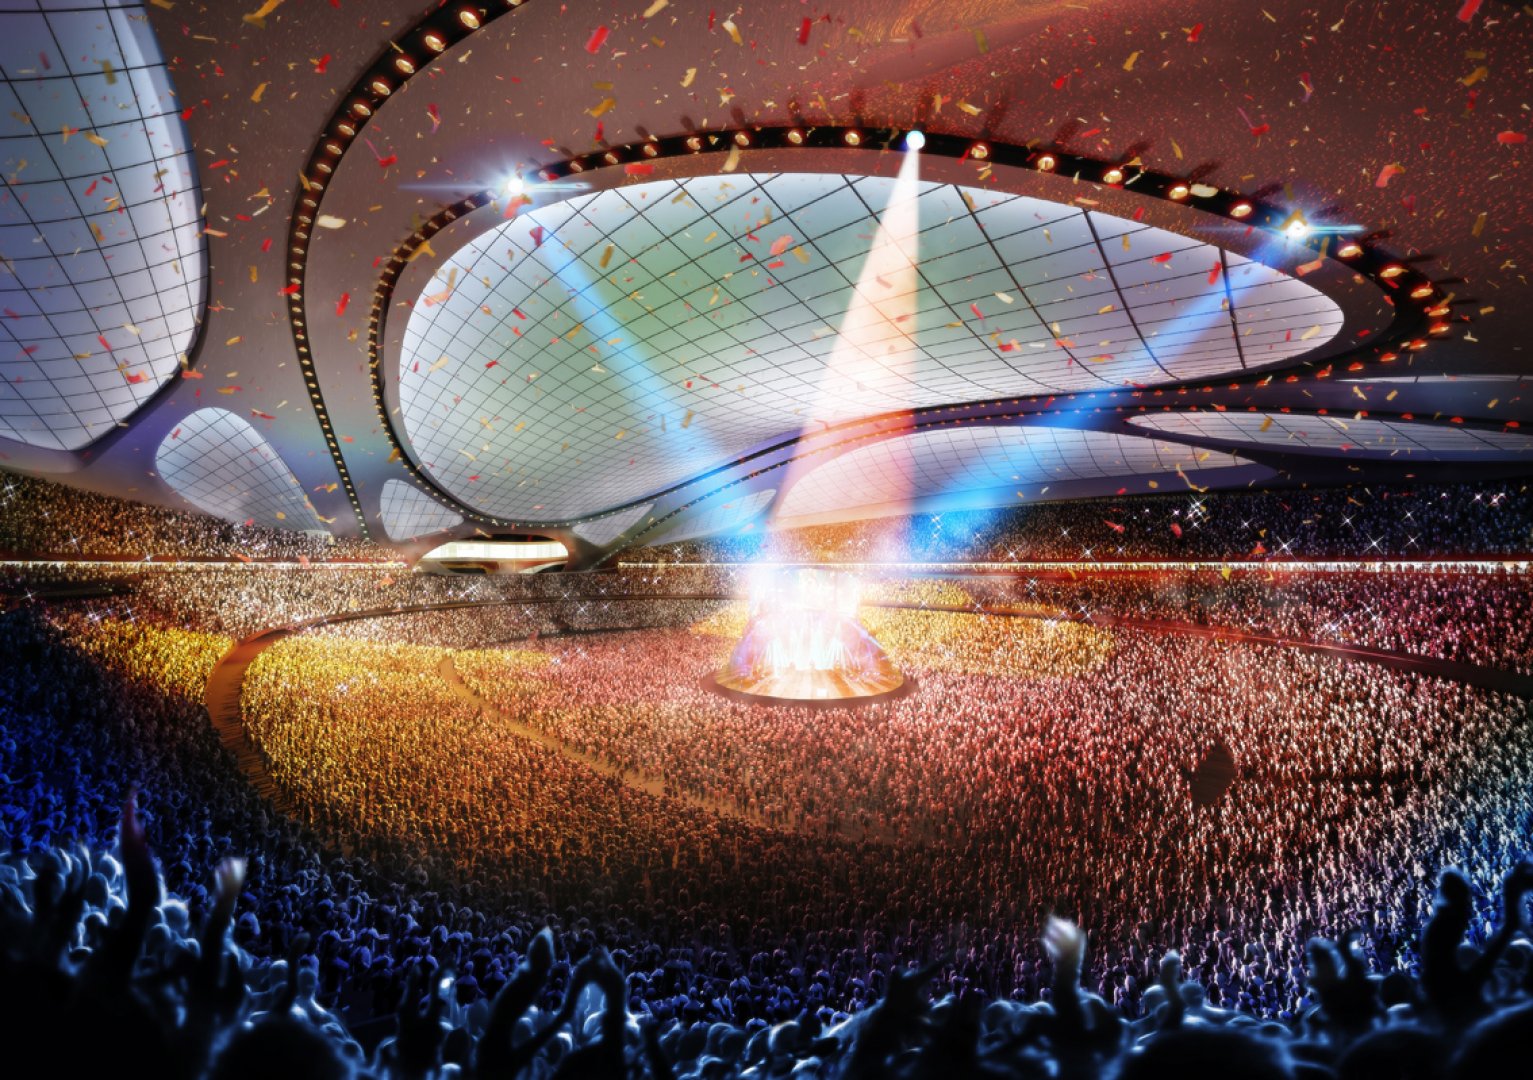 ژاپن میزبان المپیک 2020،طرح زاها حدید برای استادیوم دهکده المپیک ژاپن